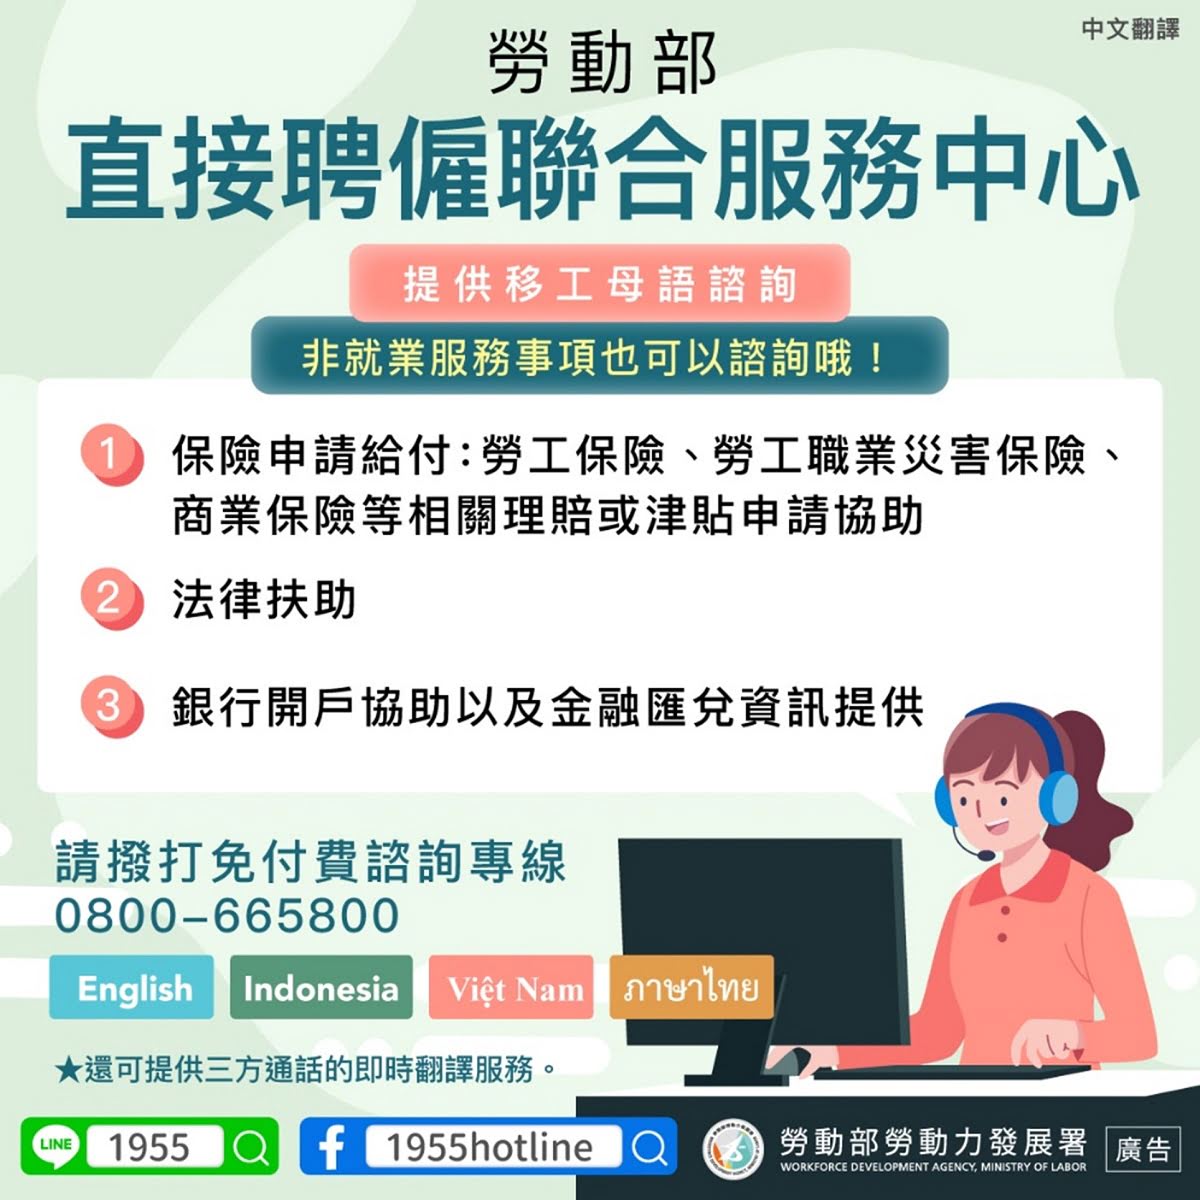 LINE@移點通-勞動部「直接聘僱聯合服務中心」提供移工母語諮詢-多國語版本